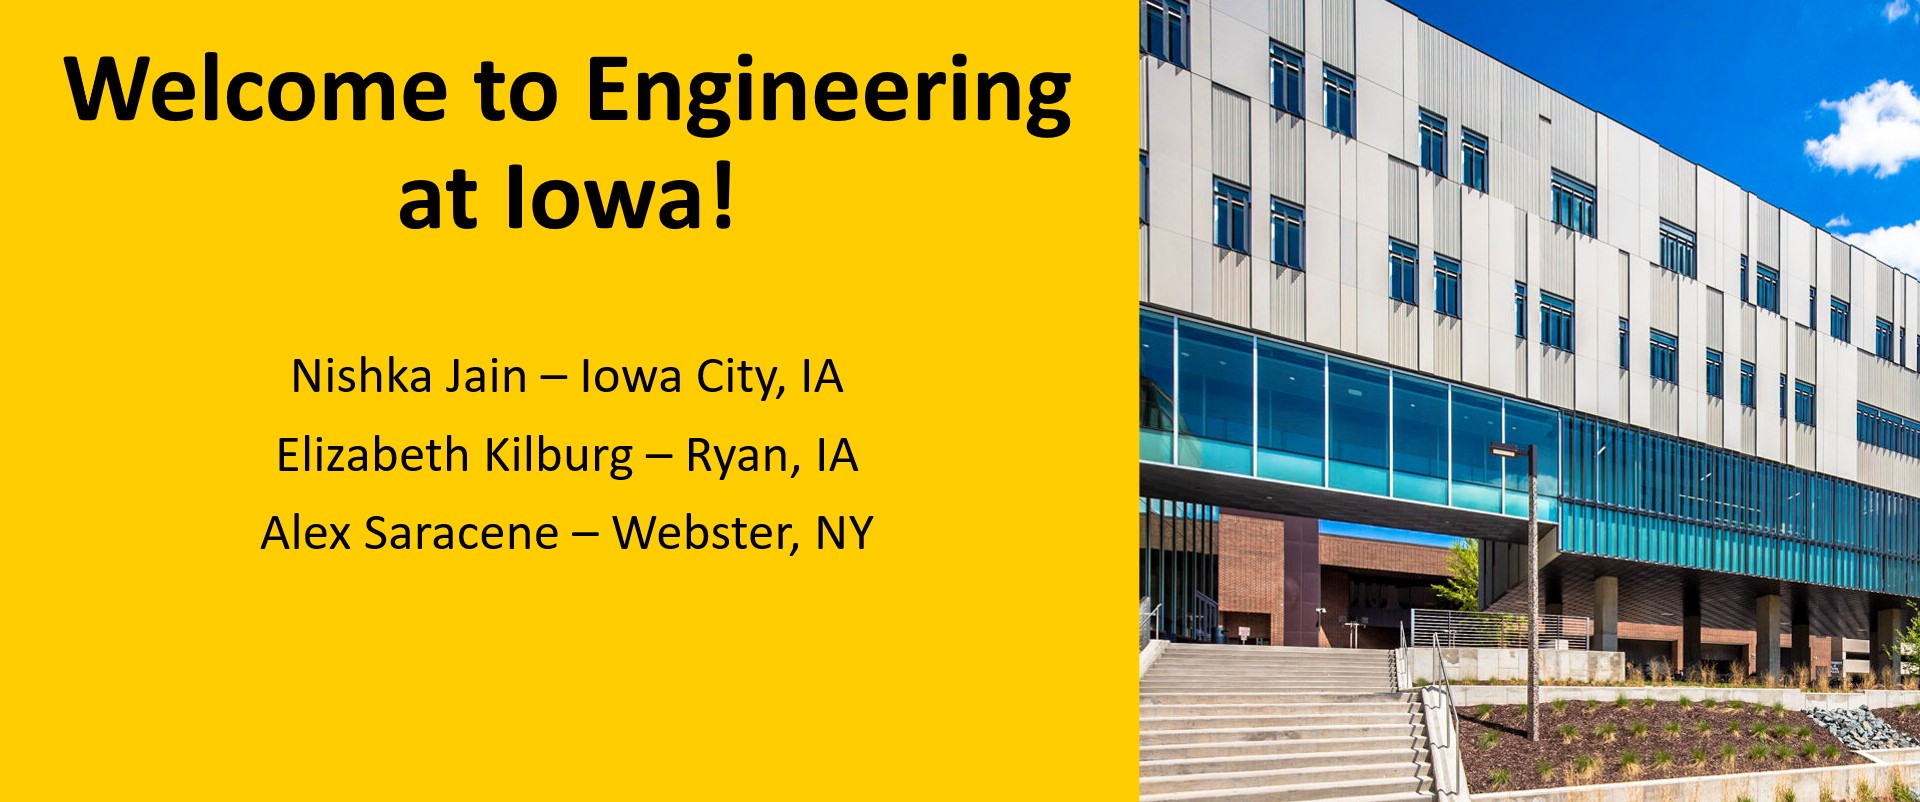 Welcome to Engineering at Iowa! Nishka Jain – Iowa City, IA​  Elizabeth Kilburg – Ryan, IA​  Alex Saracene – Webster, NY​  ​